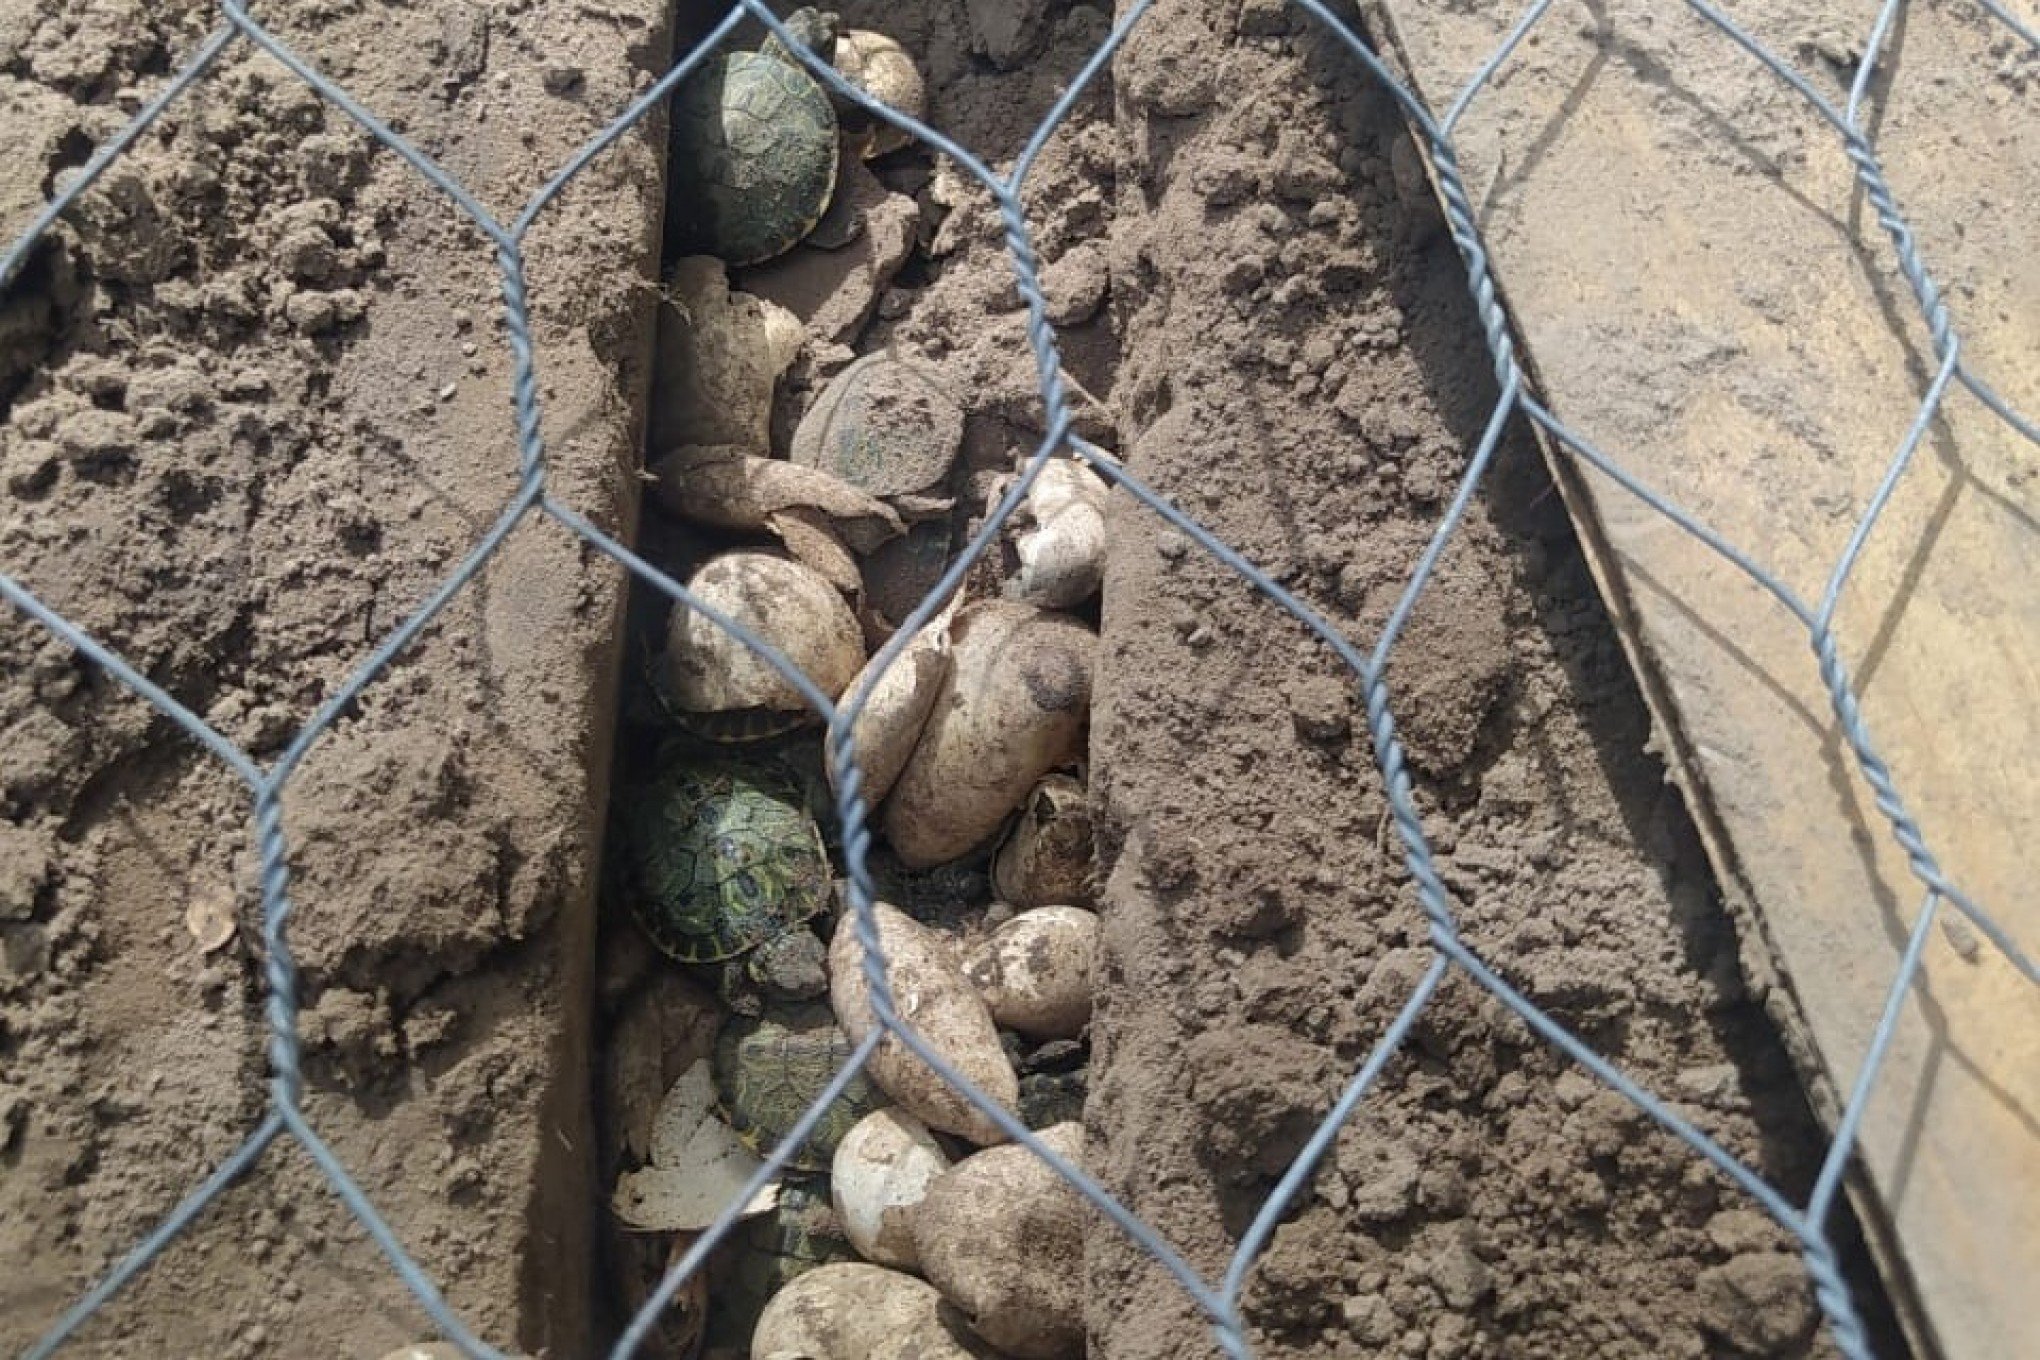 Dois mil filhotes de tartaruga são encontrados em canteiros de terra no RS